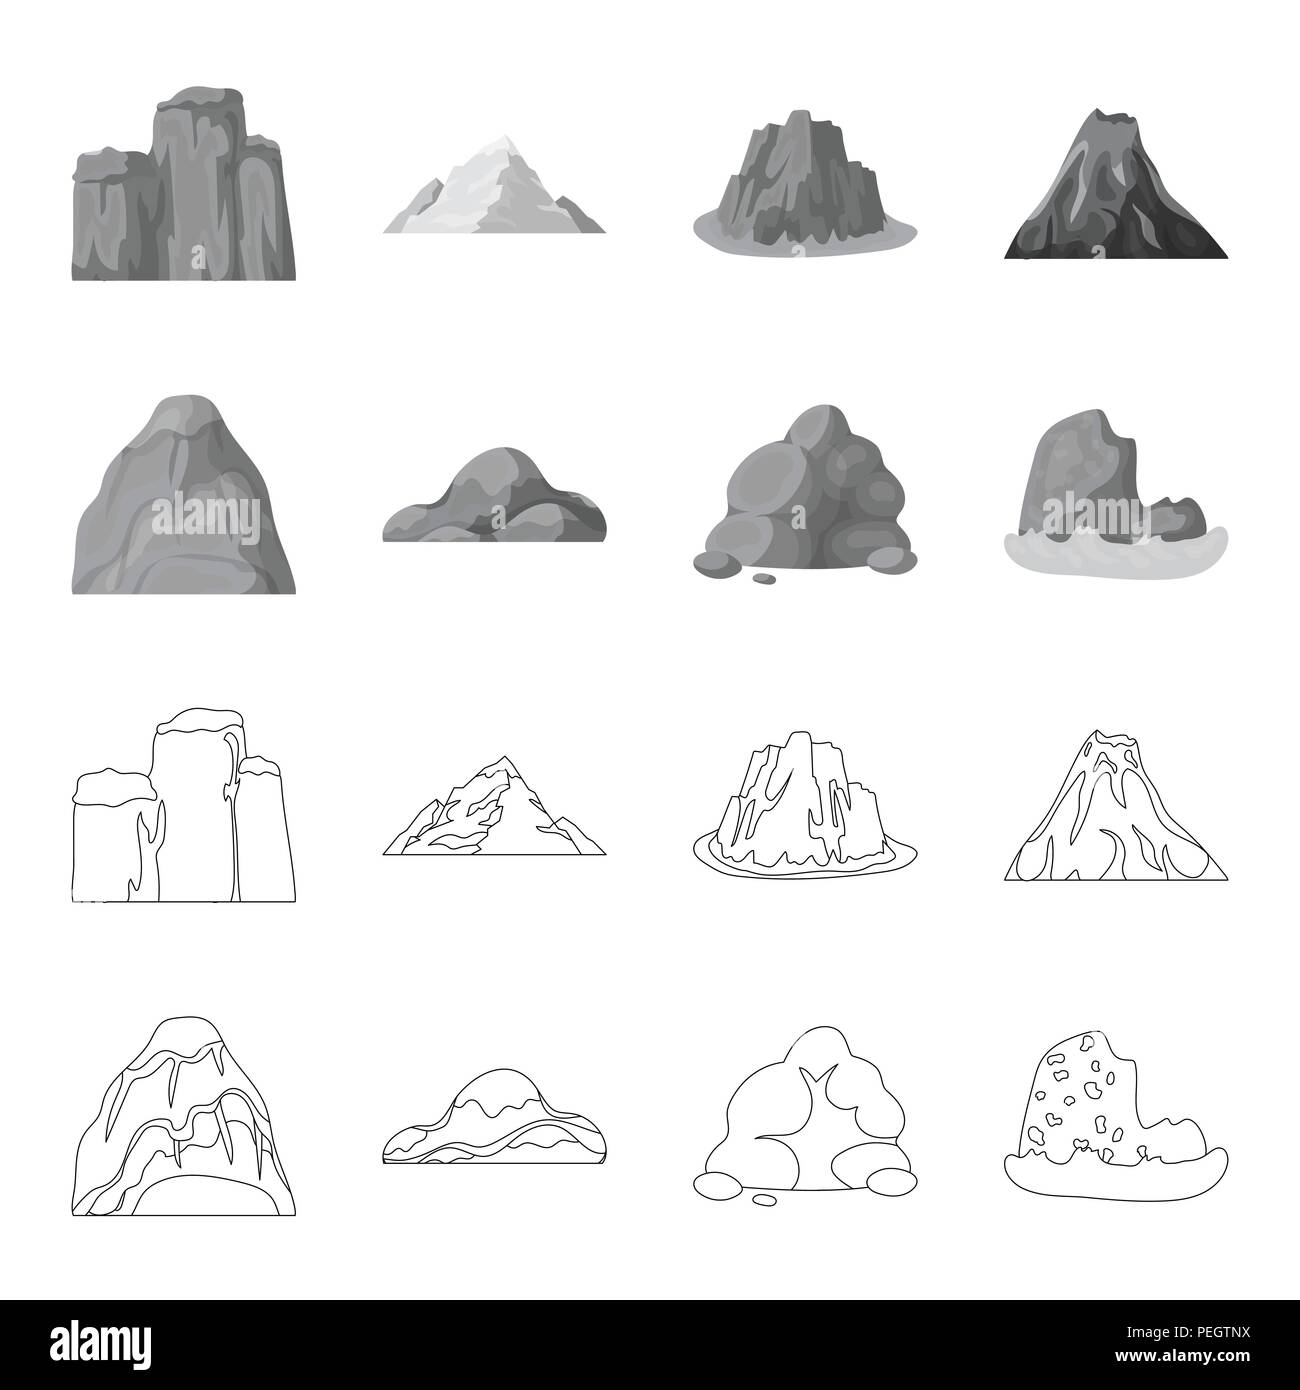 Geröll, eine abgerundete Berge, Felsen im Meer. Verschiedene berge Sammlung Icons in Grenzen gesetzt, Schwarzweiß-Stil vektor Symbol lieferbar Abbildung: Stock Vektor